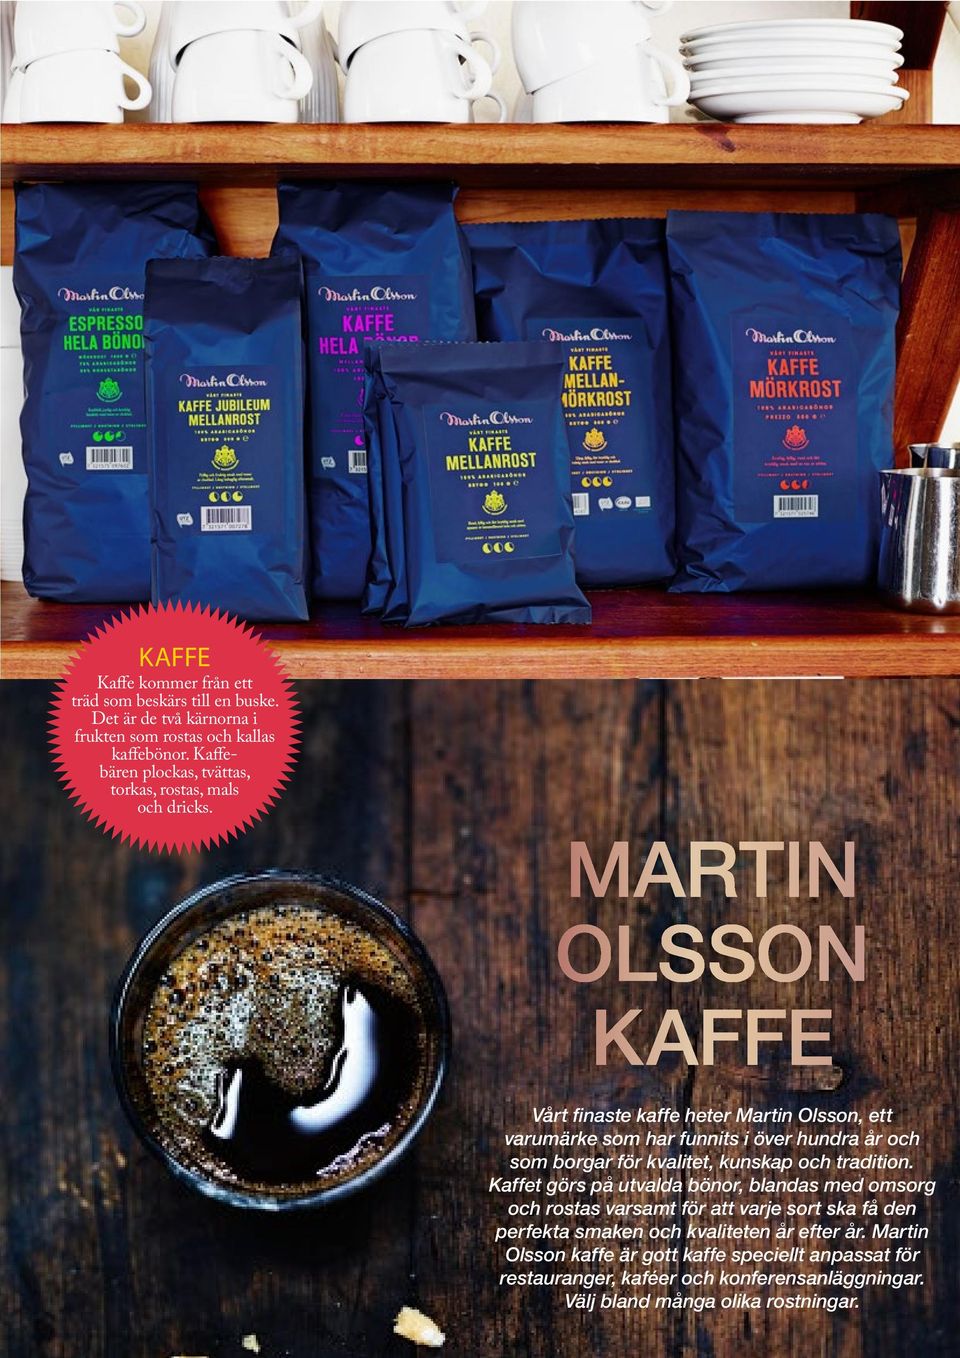 MARTIN OLSSON KAFFE Vårt finaste kaffe heter Martin Olsson, ett varumärke som har funnits i över hundra år och som borgar för kvalitet, kunskap och tradition.